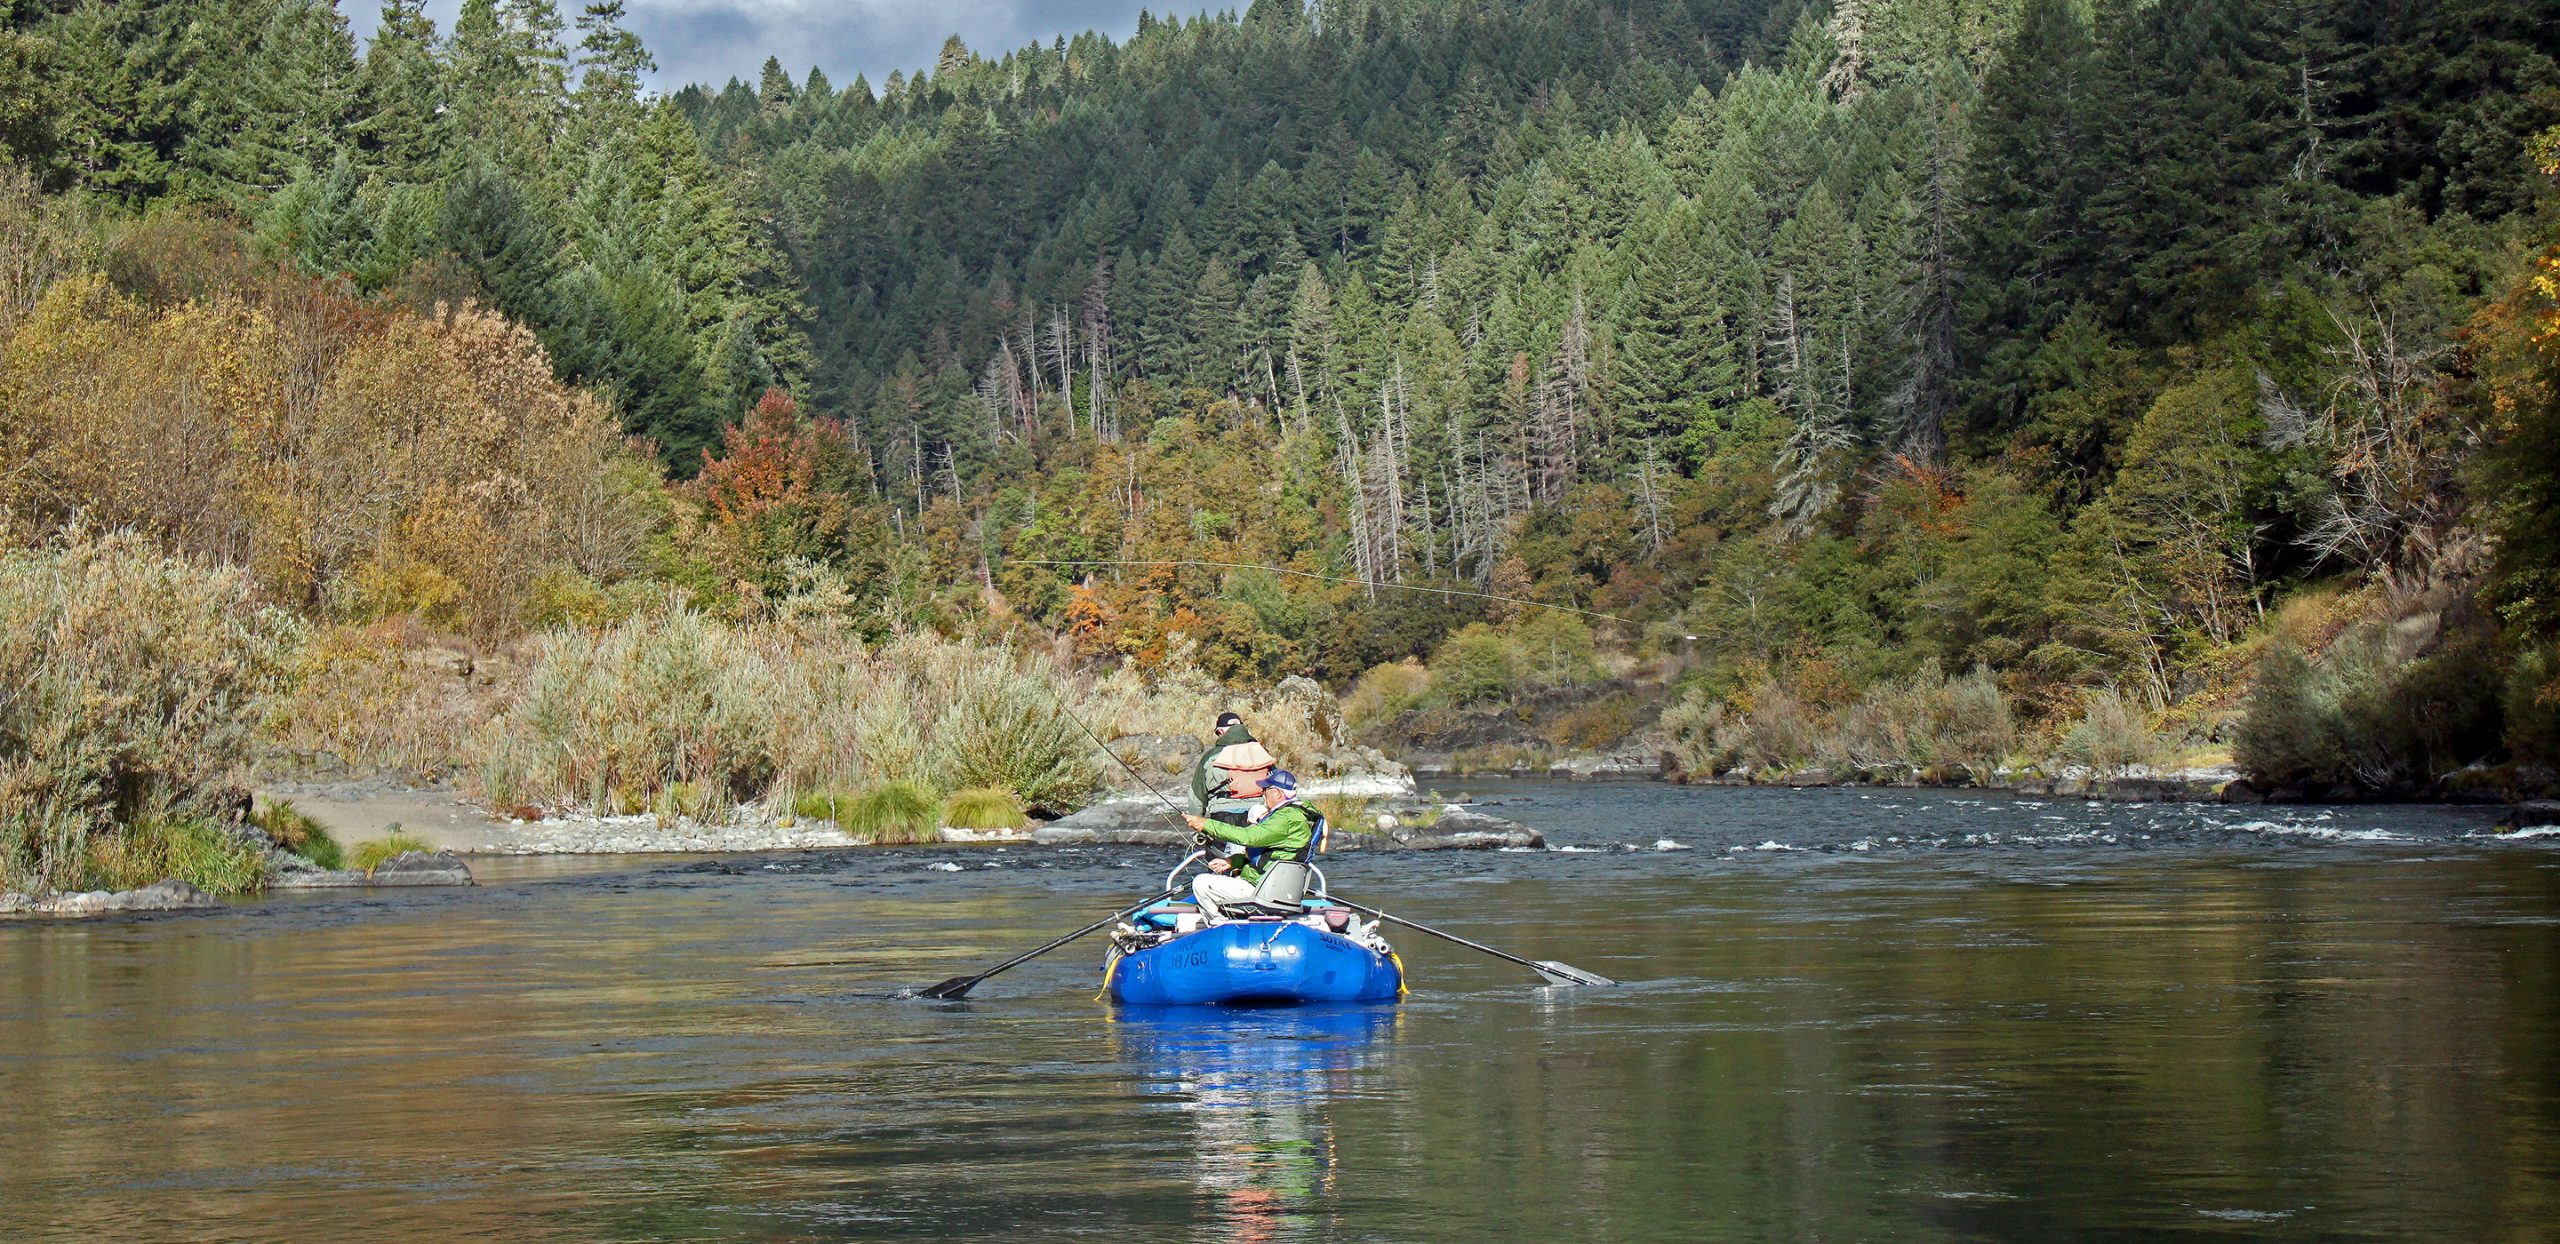 Rogue River Lodge To Lodge Fishing Trips Rogue River Fishing Trips